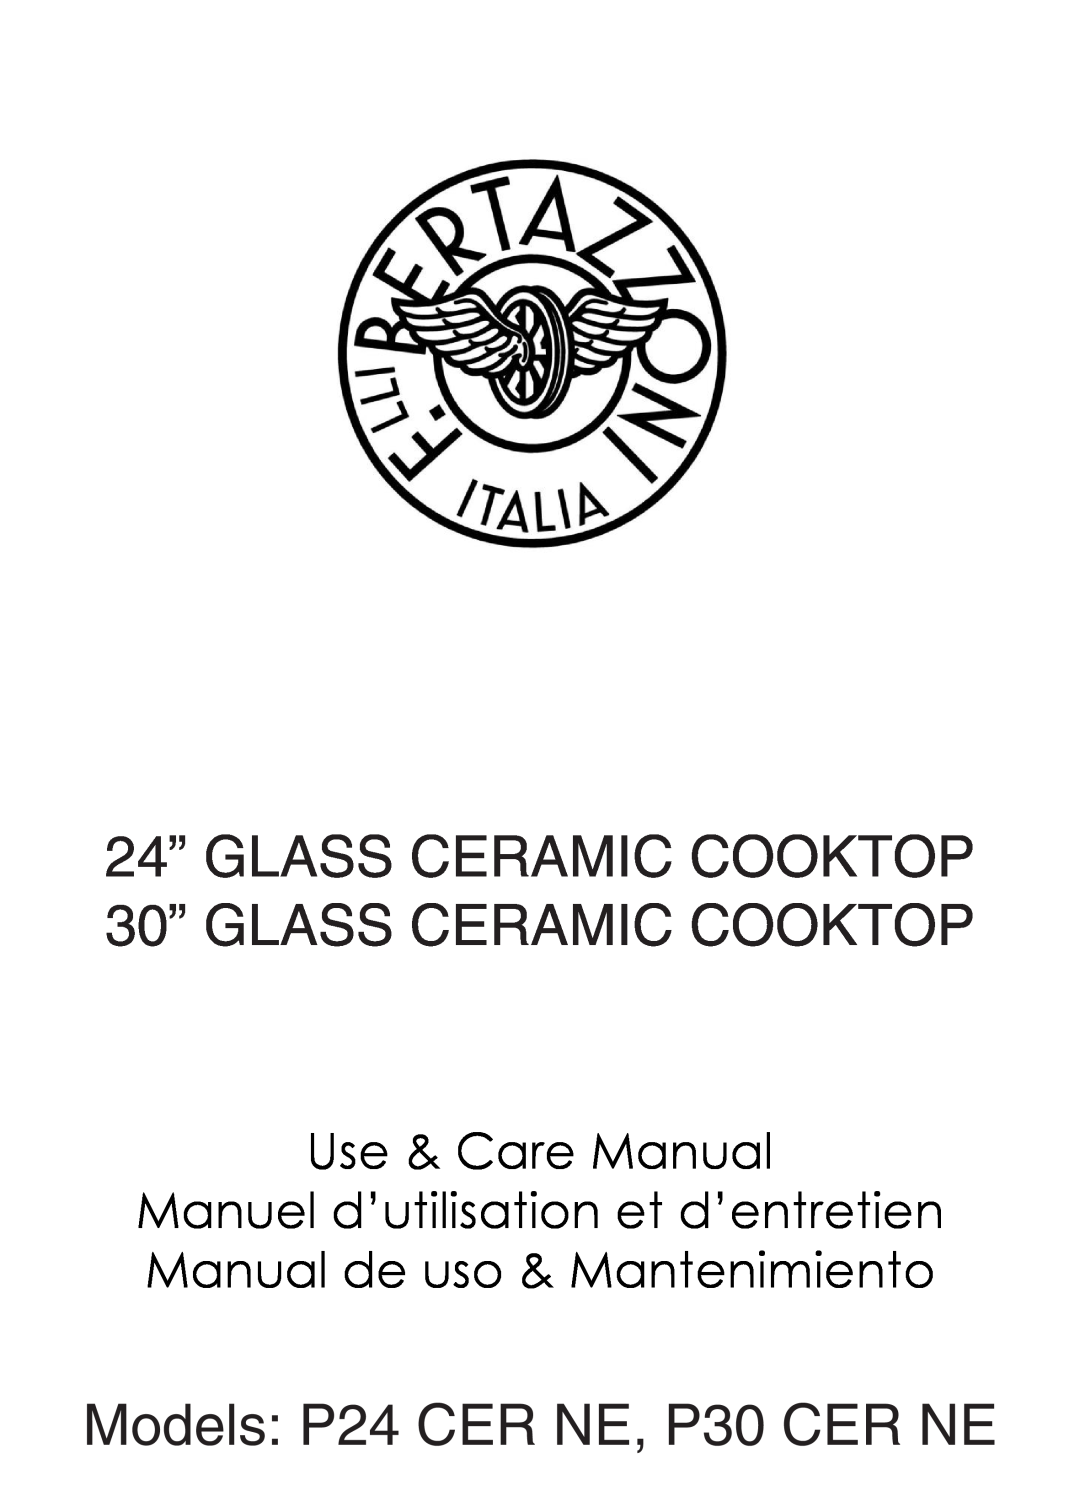 Bertazzoni manual 24” GLASS CERAMIC COOKTOP 30” GLASS CERAMIC COOKTOP, Models P24 CER NE, P30 CER NE, Use & Care Manual 